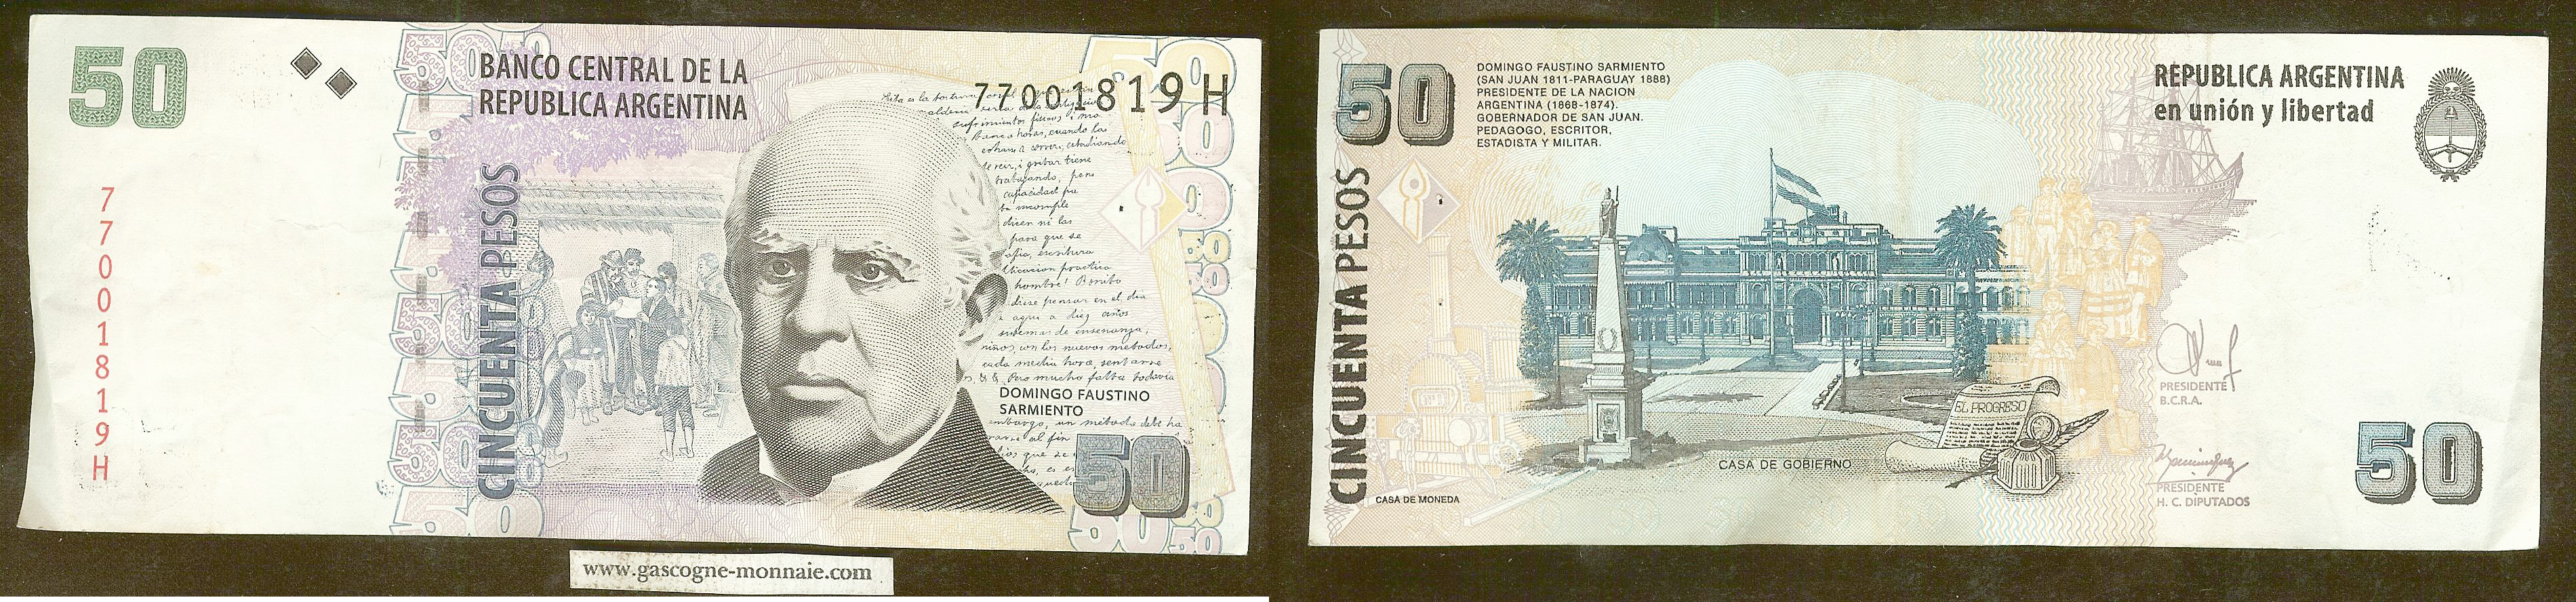 Argentina 50 pesos n.d. 1999-2003